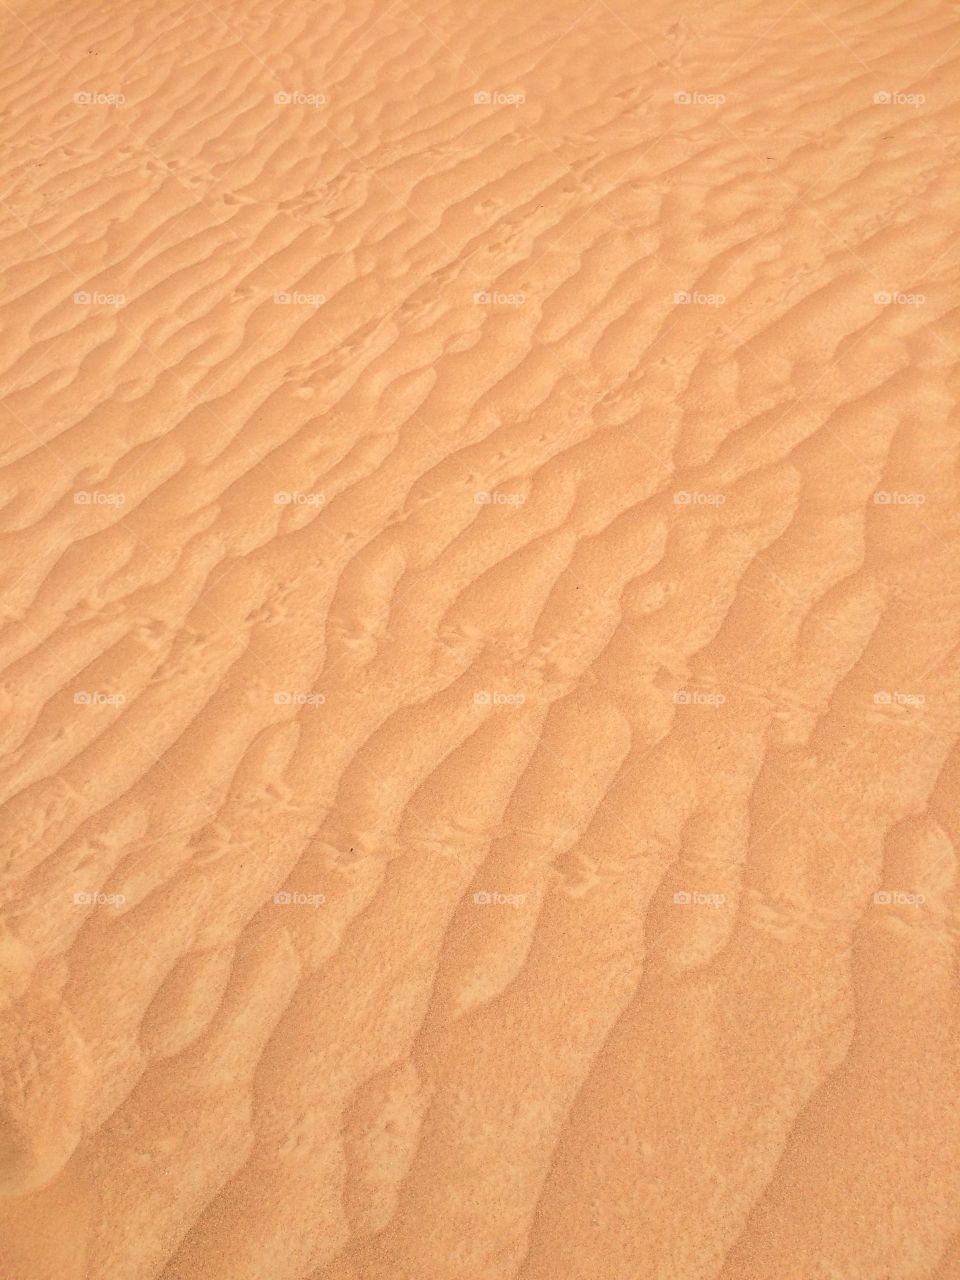 Full frame shot sand dunes at desert